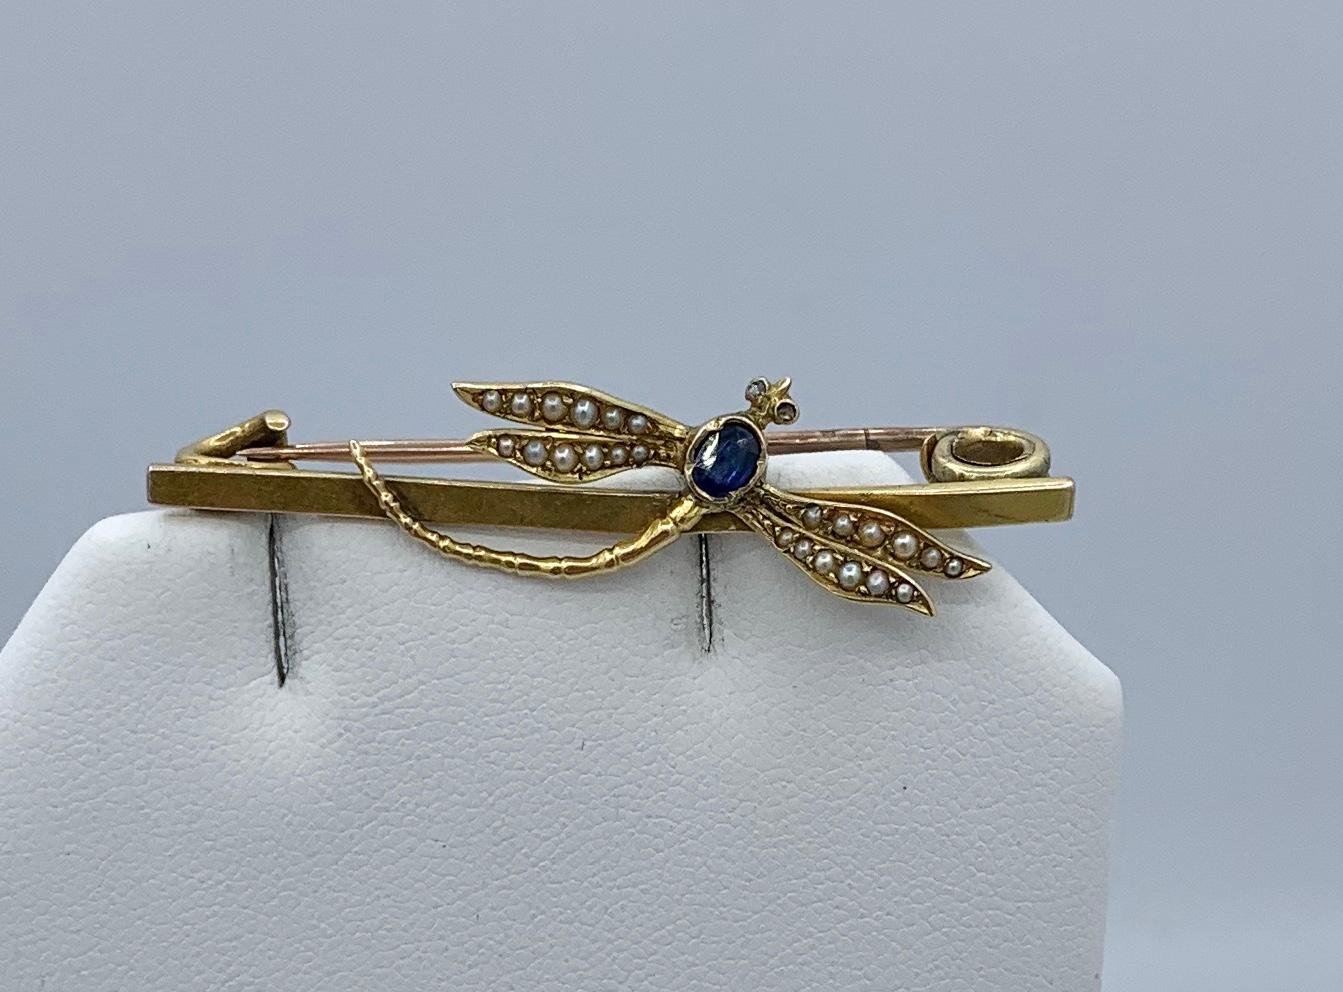 Dies ist eine atemberaubende Art Nouveau - Art Deco Libelle Insekt Brosche Pin mit einem ovalen facettierten natürlichen abgebaut blauen Saphir von großer Schönheit.  Die Augen sind mit Diamanten im Rosenschliff besetzt.  Die Flügel sind mit